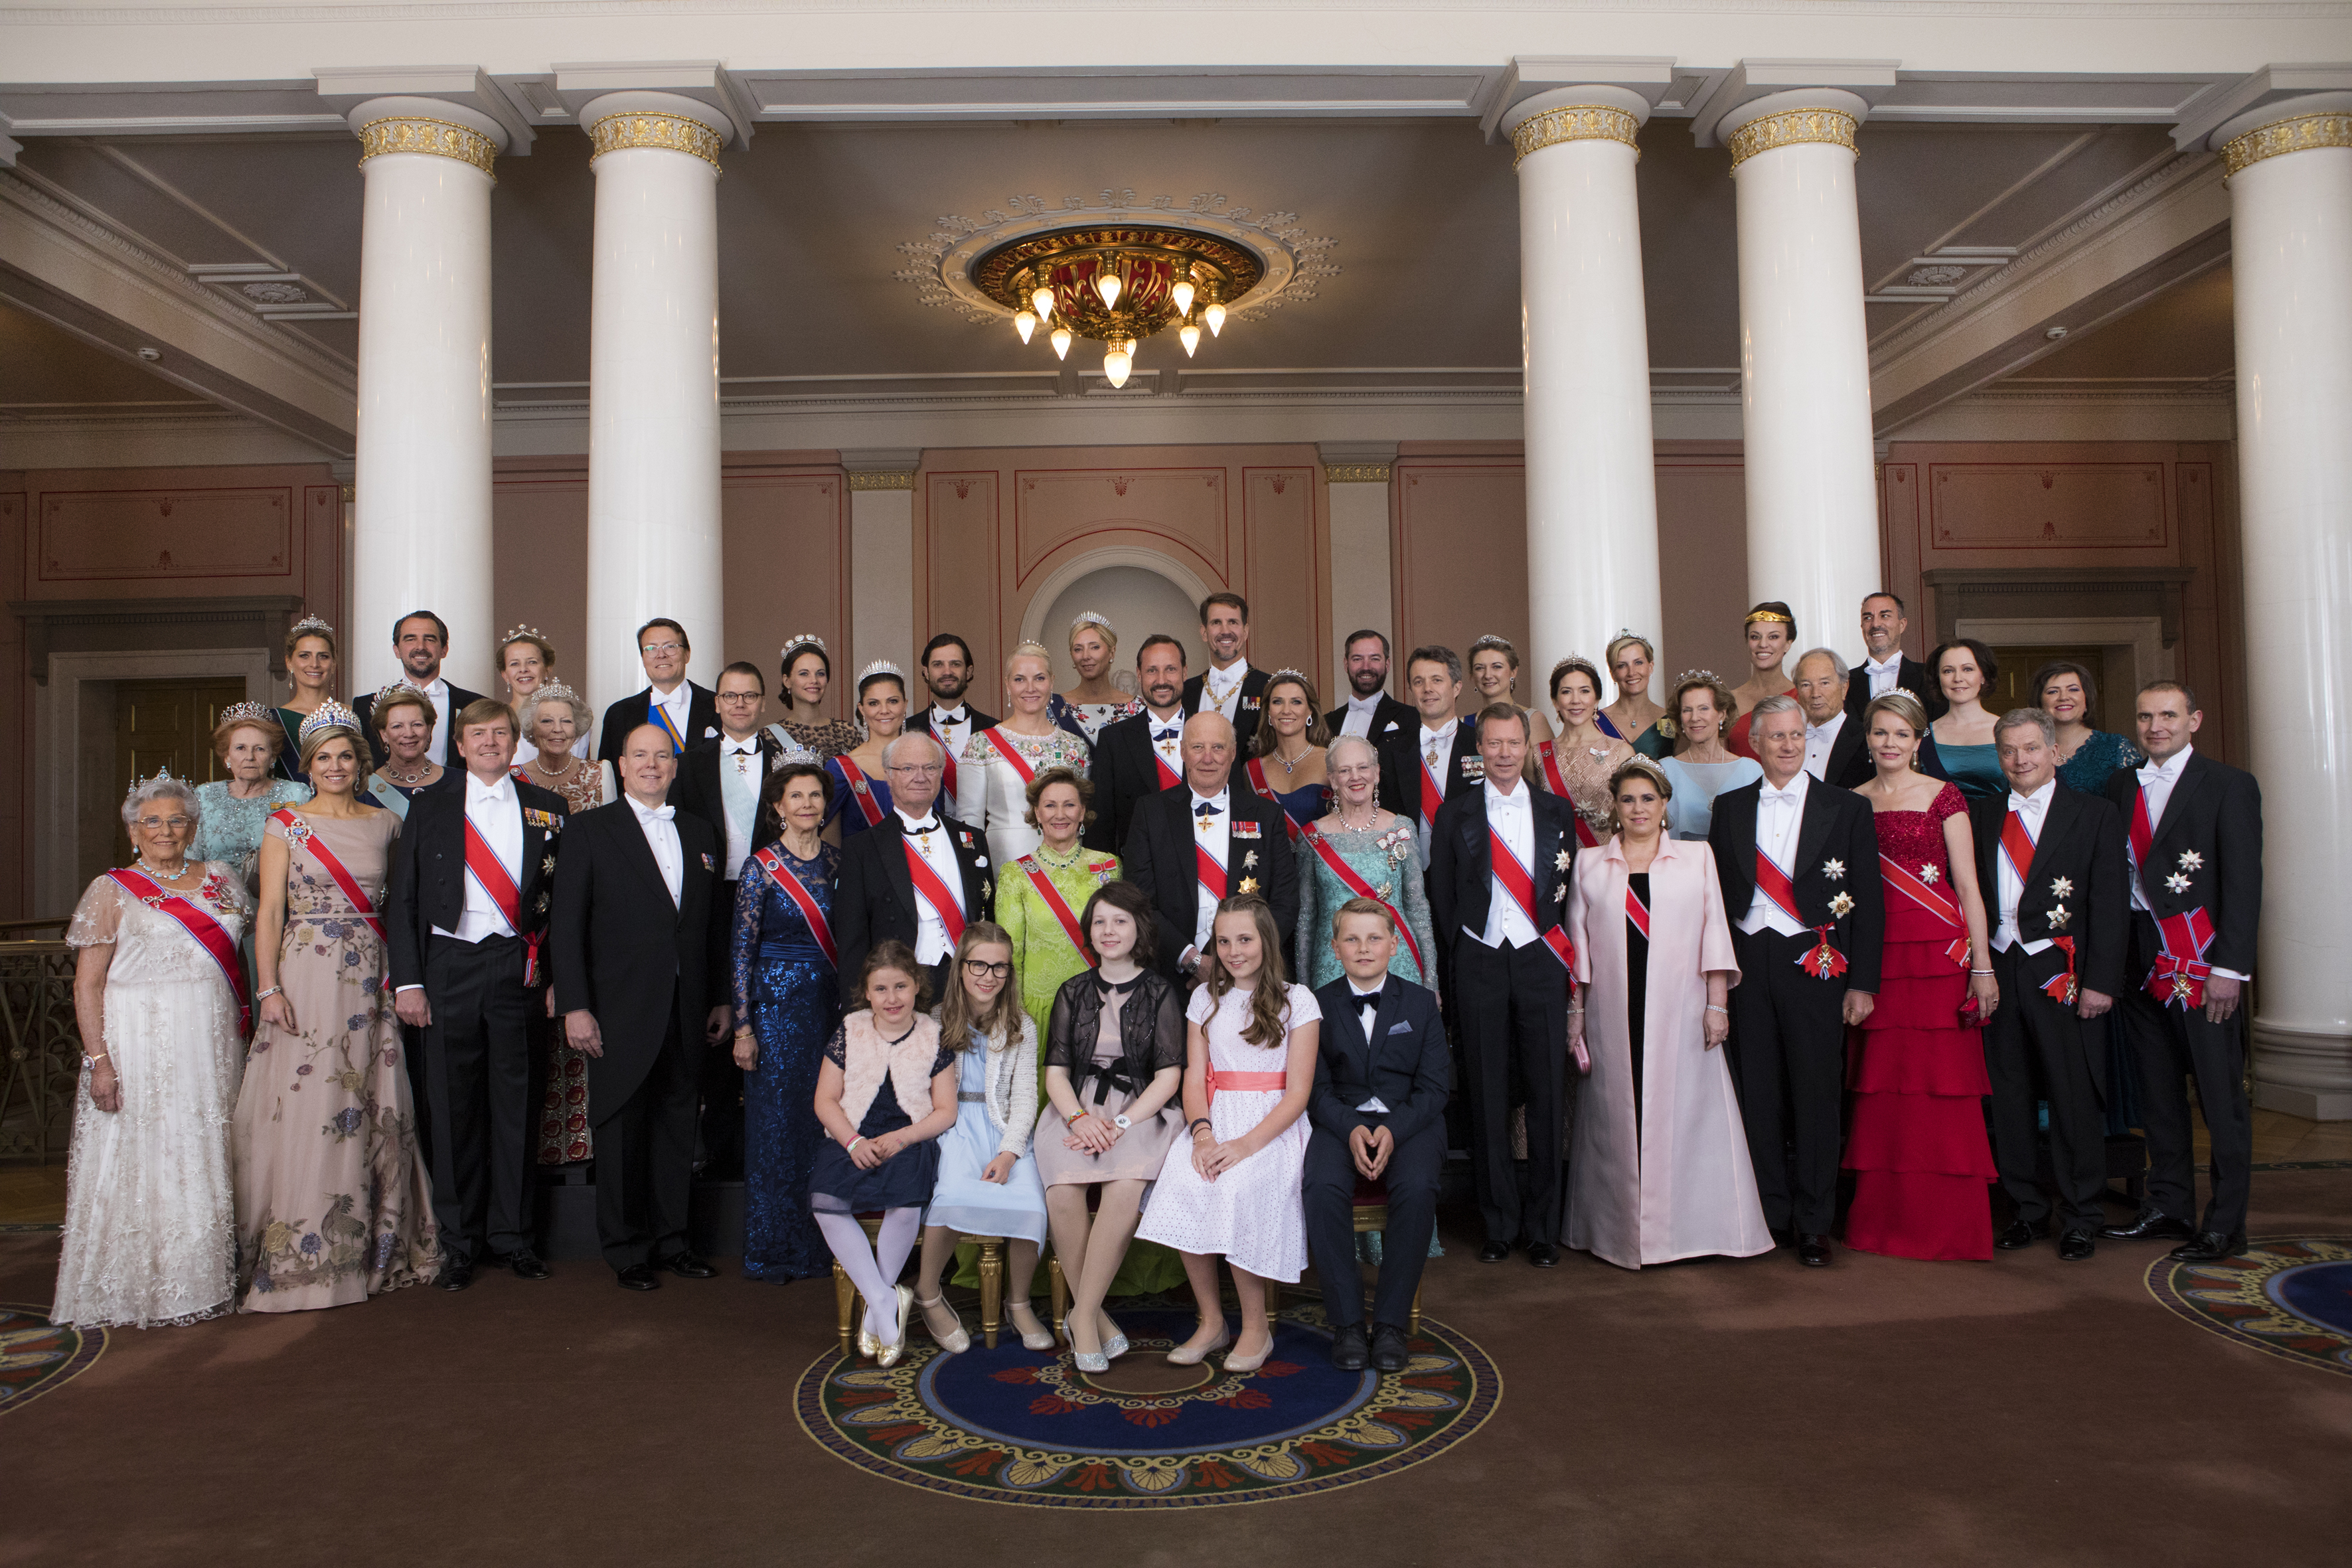 Ньюс роял. Королевская семья Норвегии 2022. Королевская семья Норвегии 2022 фото. Норвежские Королевские династии. Королевский дом Норвегии.